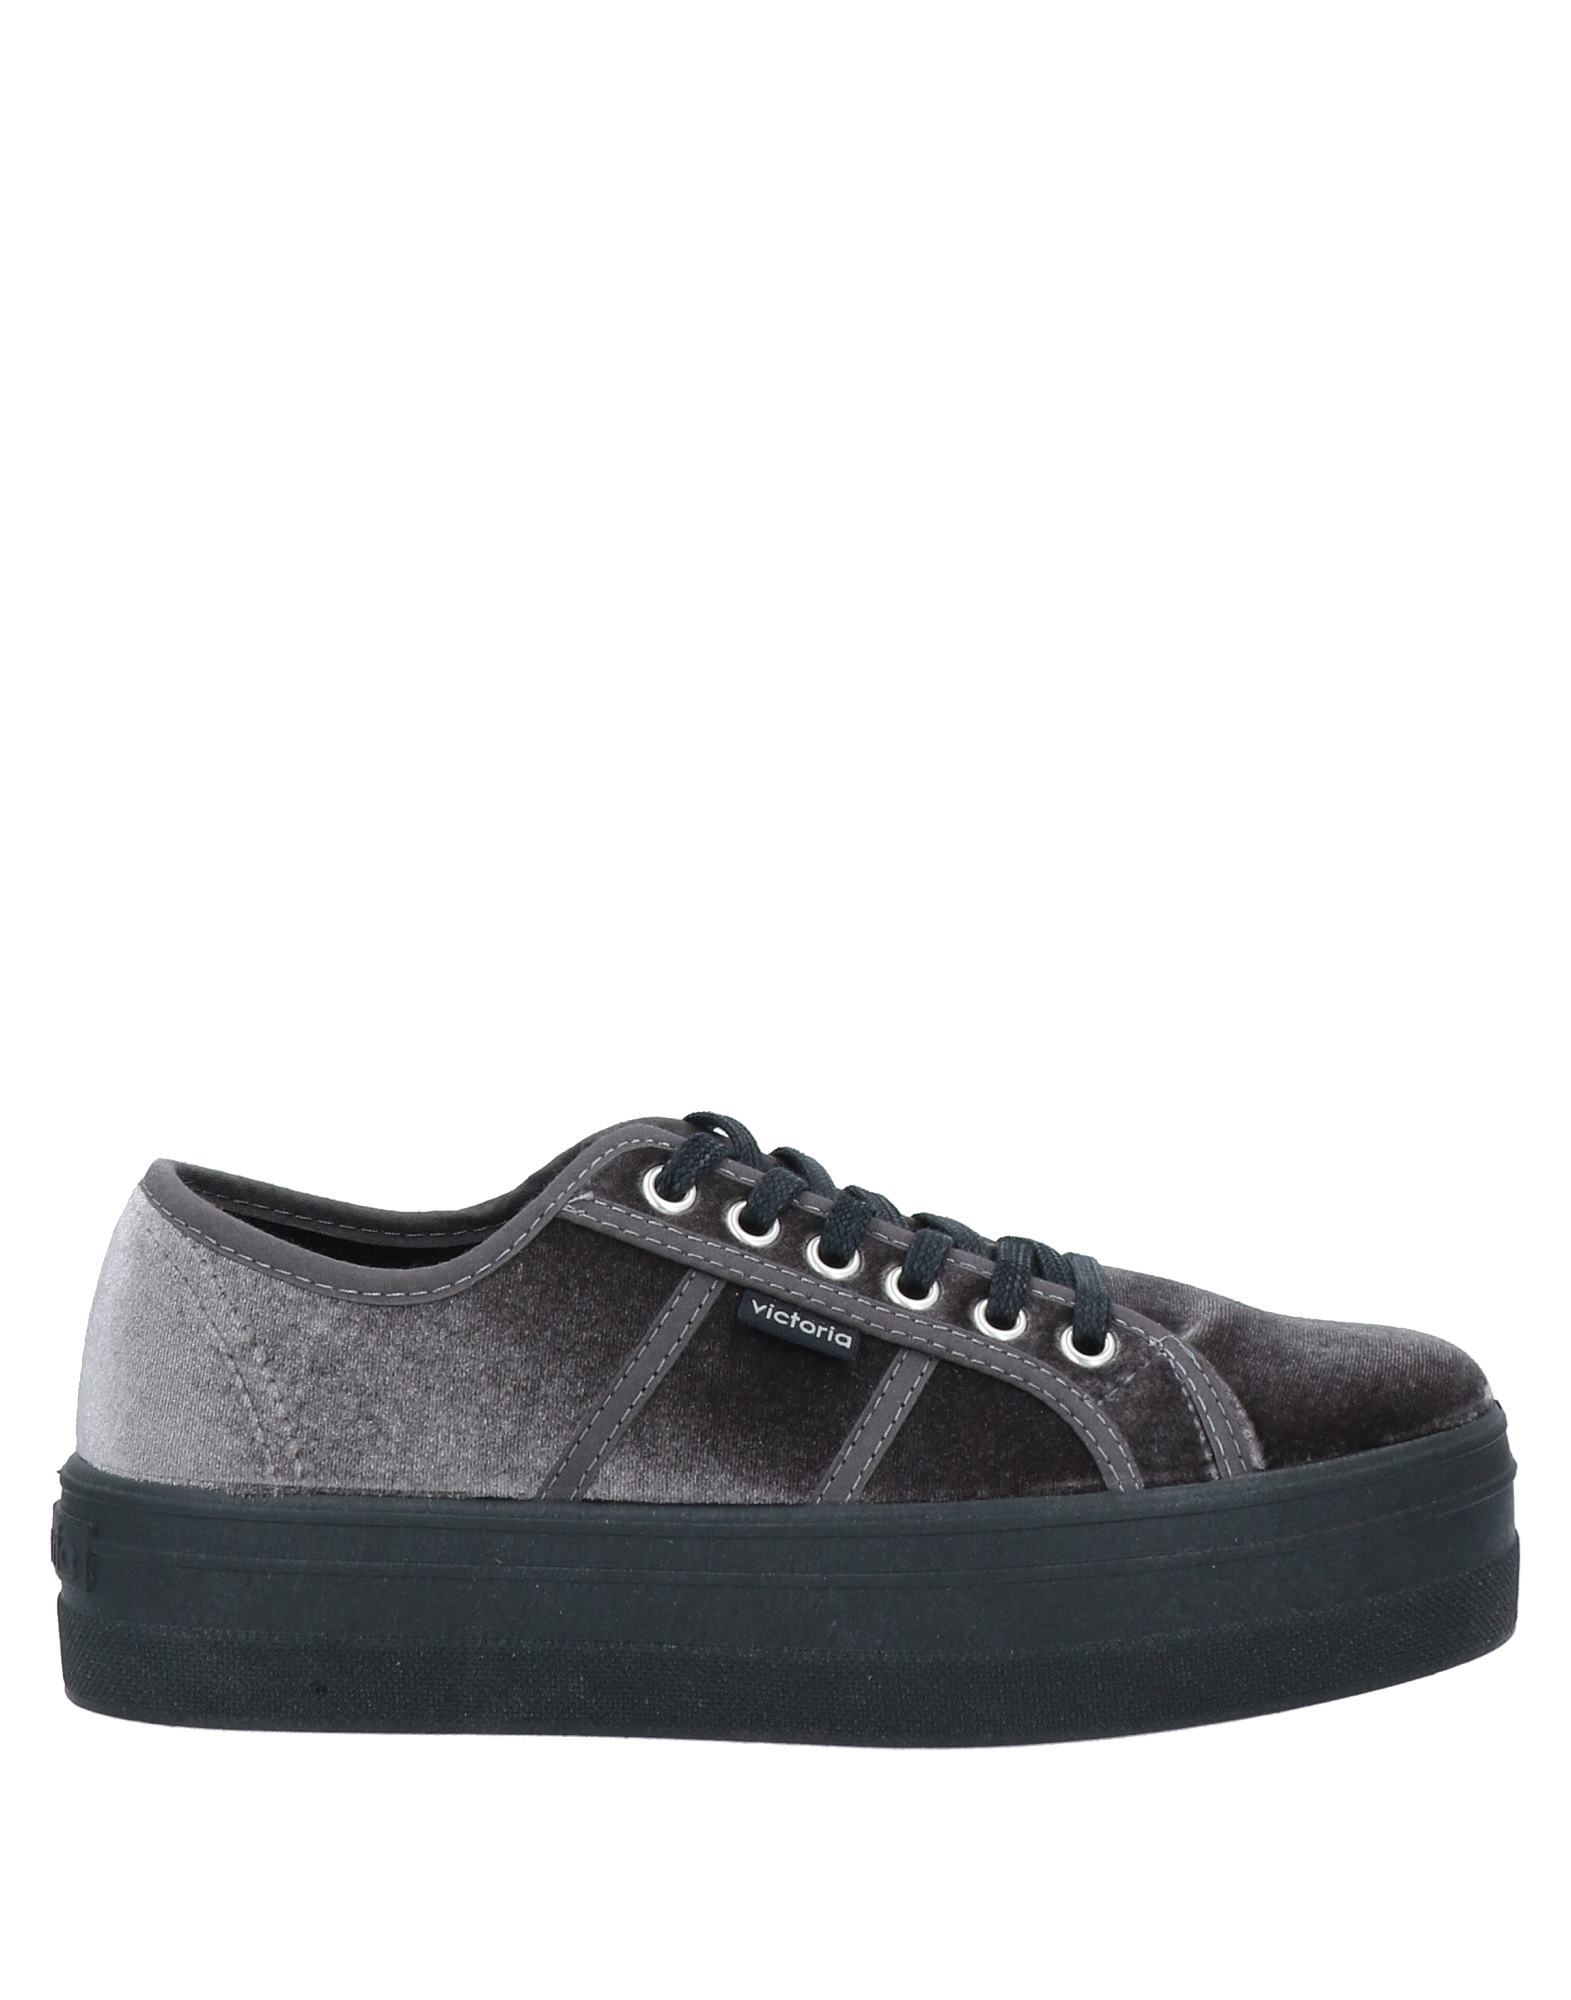 women's shoes VIC 7 sandals black leather BZ553-C EU 37 